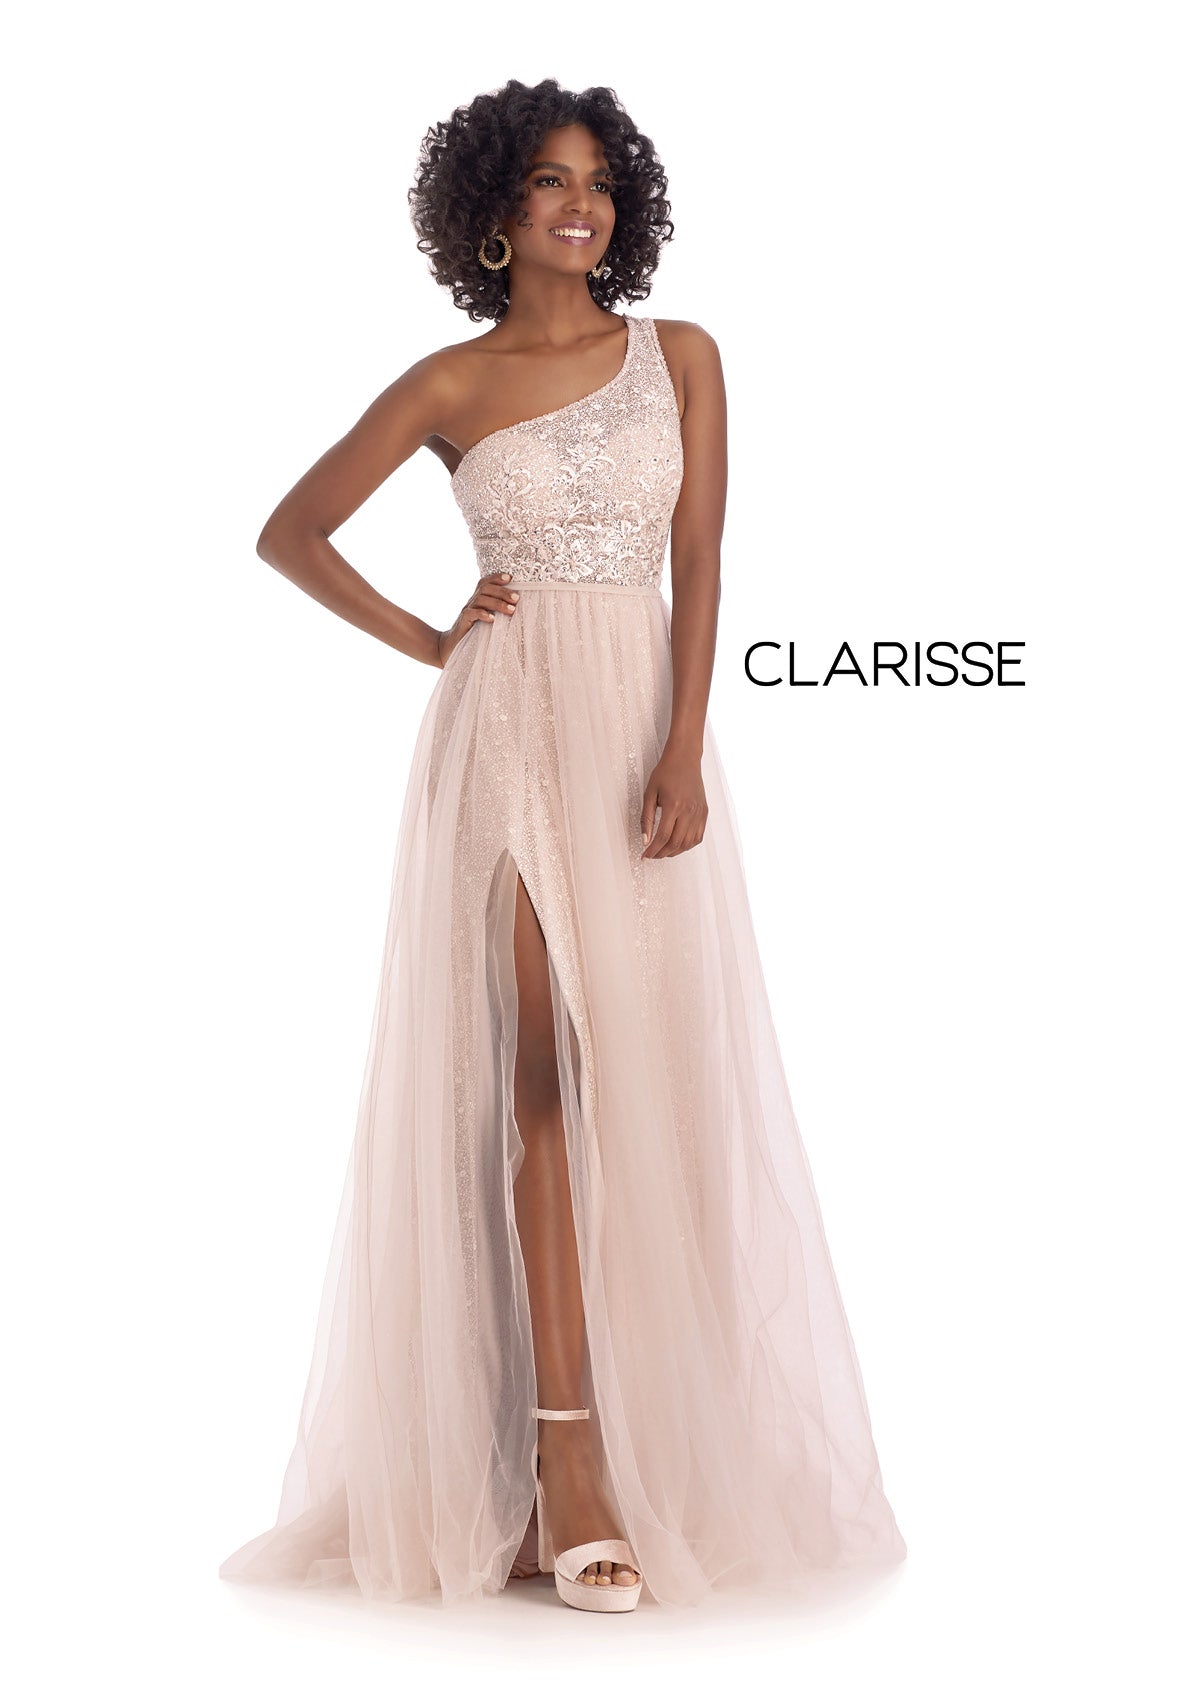 Style #5118 Clarisse